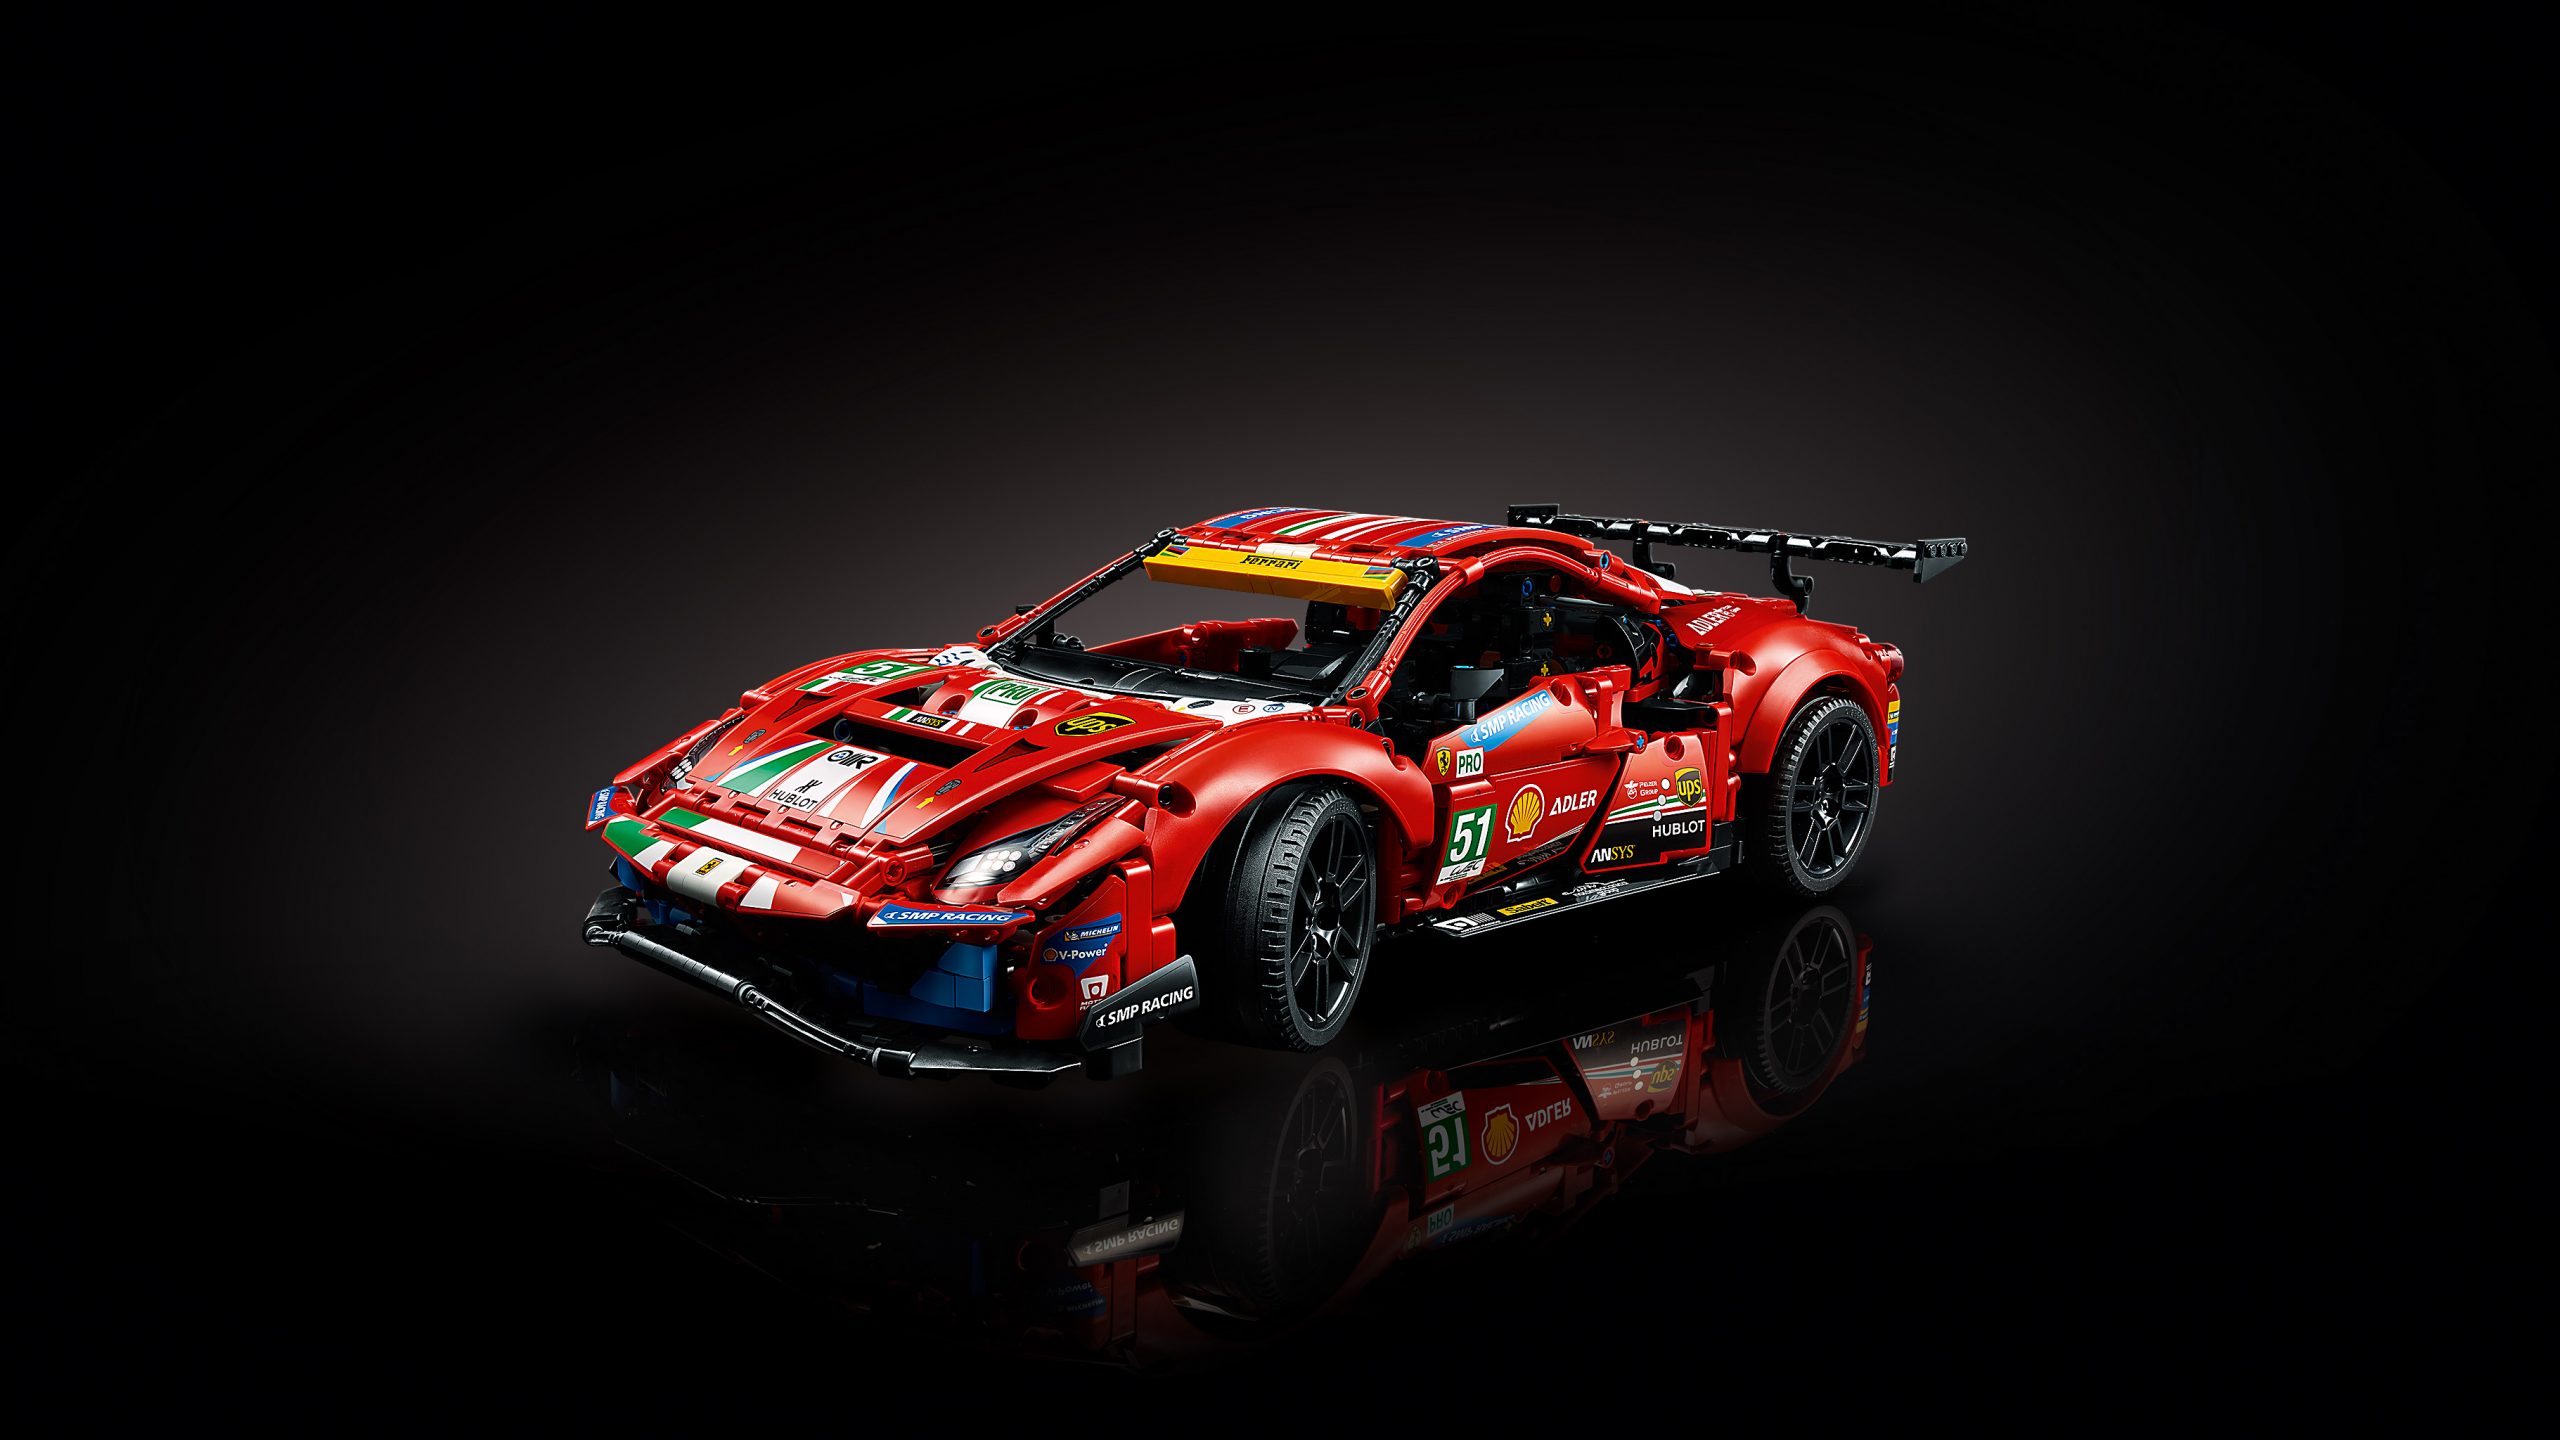 More information about "Cosa succede quando unisci Lego, Assetto Corsa, Ferrari ed Esports..."